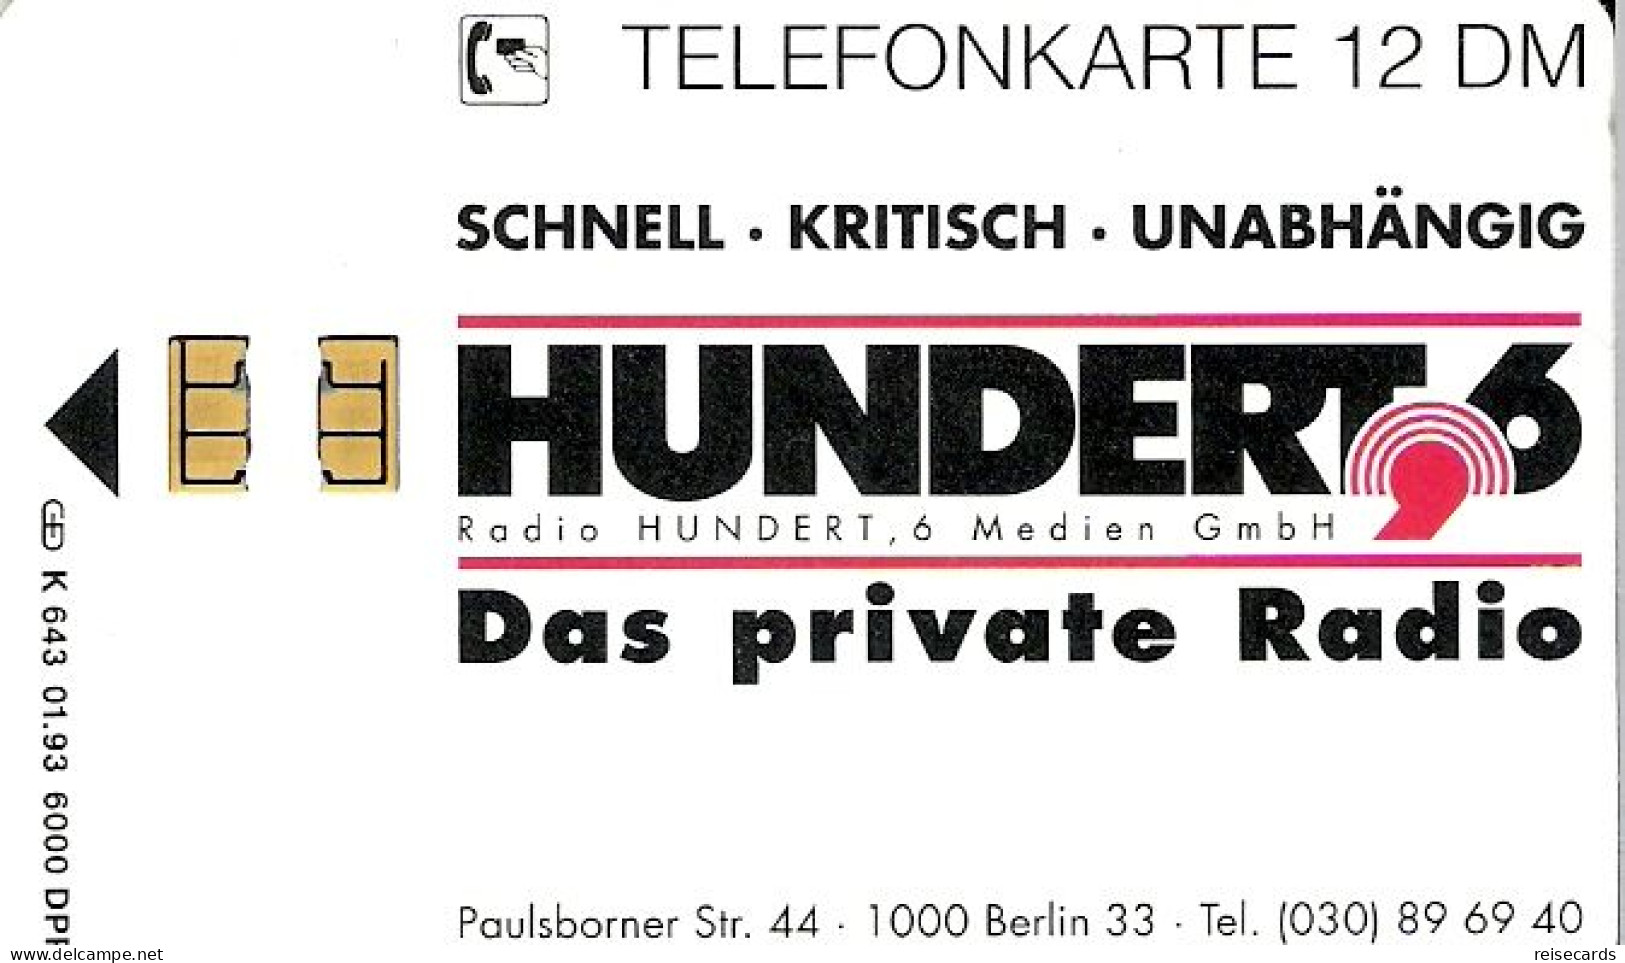 Germany: K 643 01.93 Radio Hundert, 6 Medien GmbH - K-Series : Serie Clientes